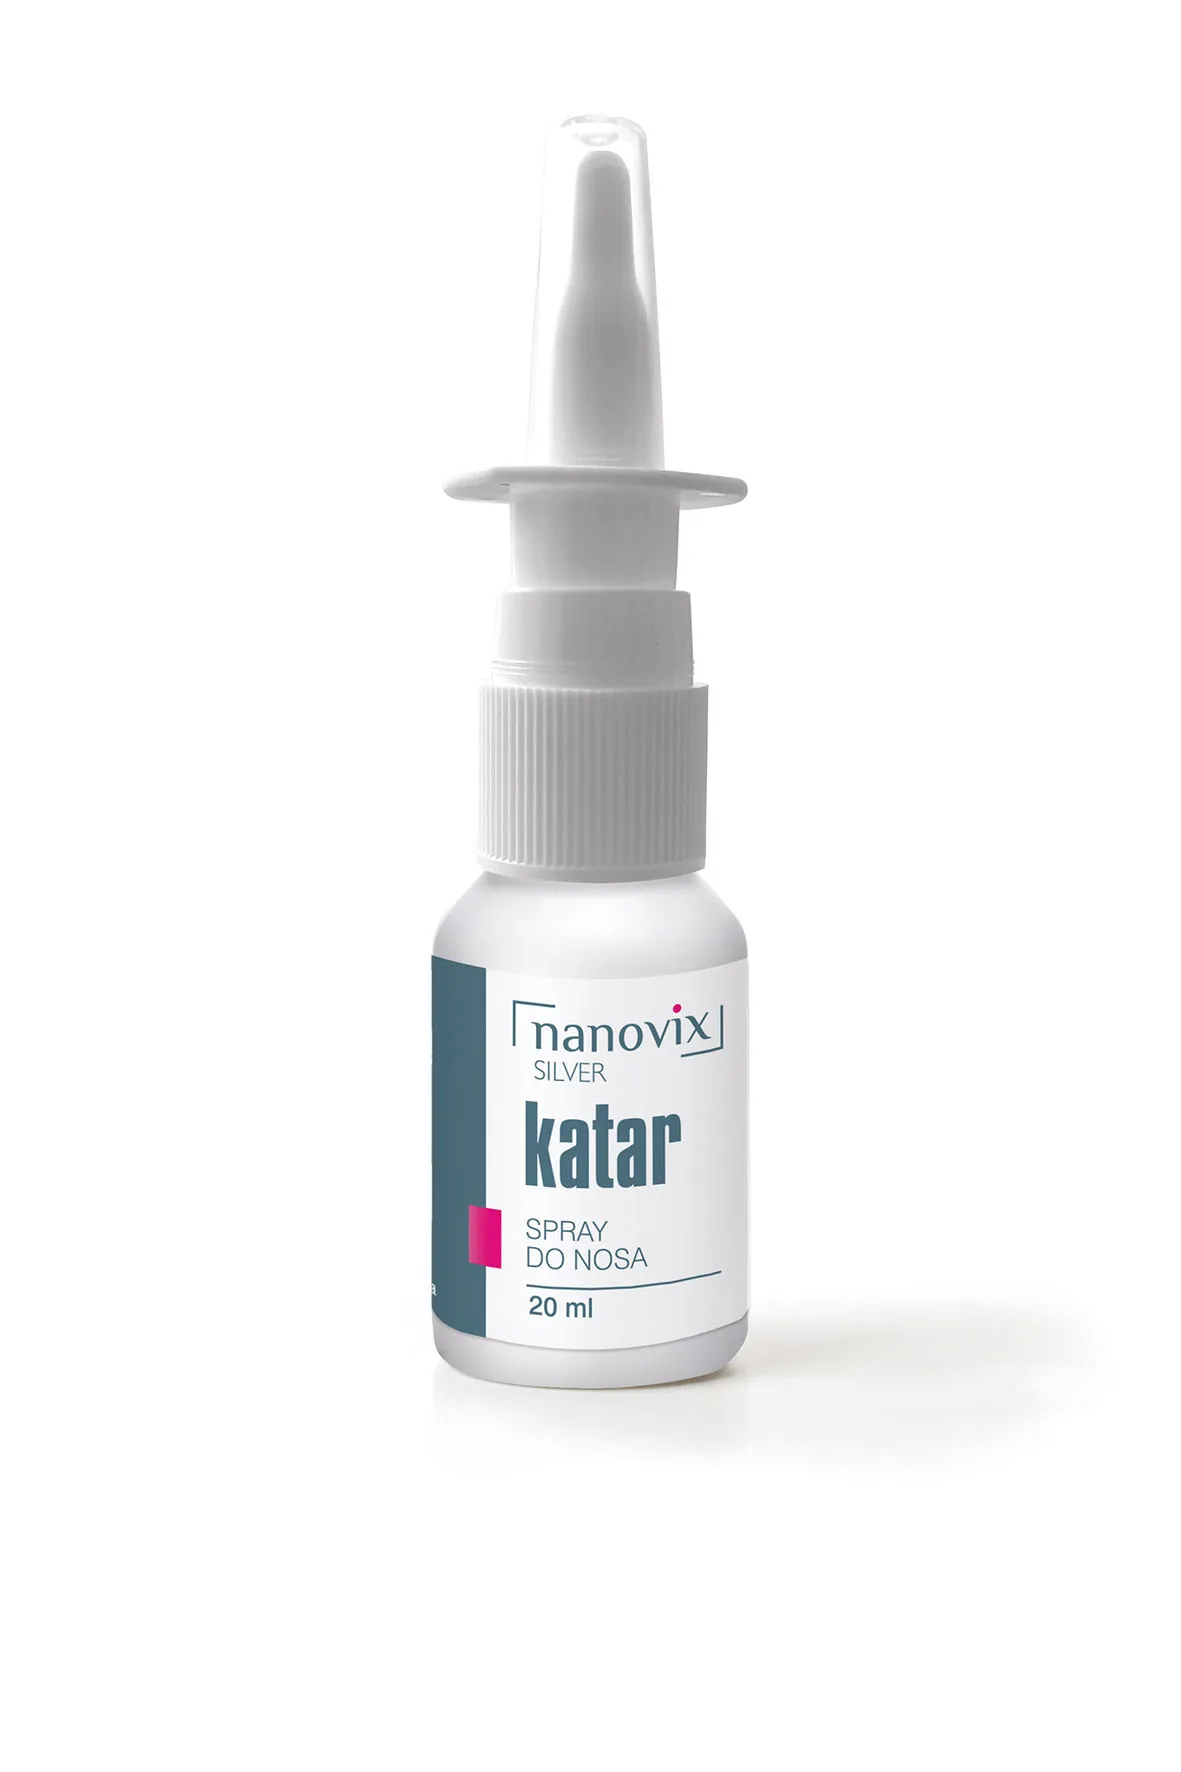 Nanovix Silver Katar, spray do nosa, 20 ml 